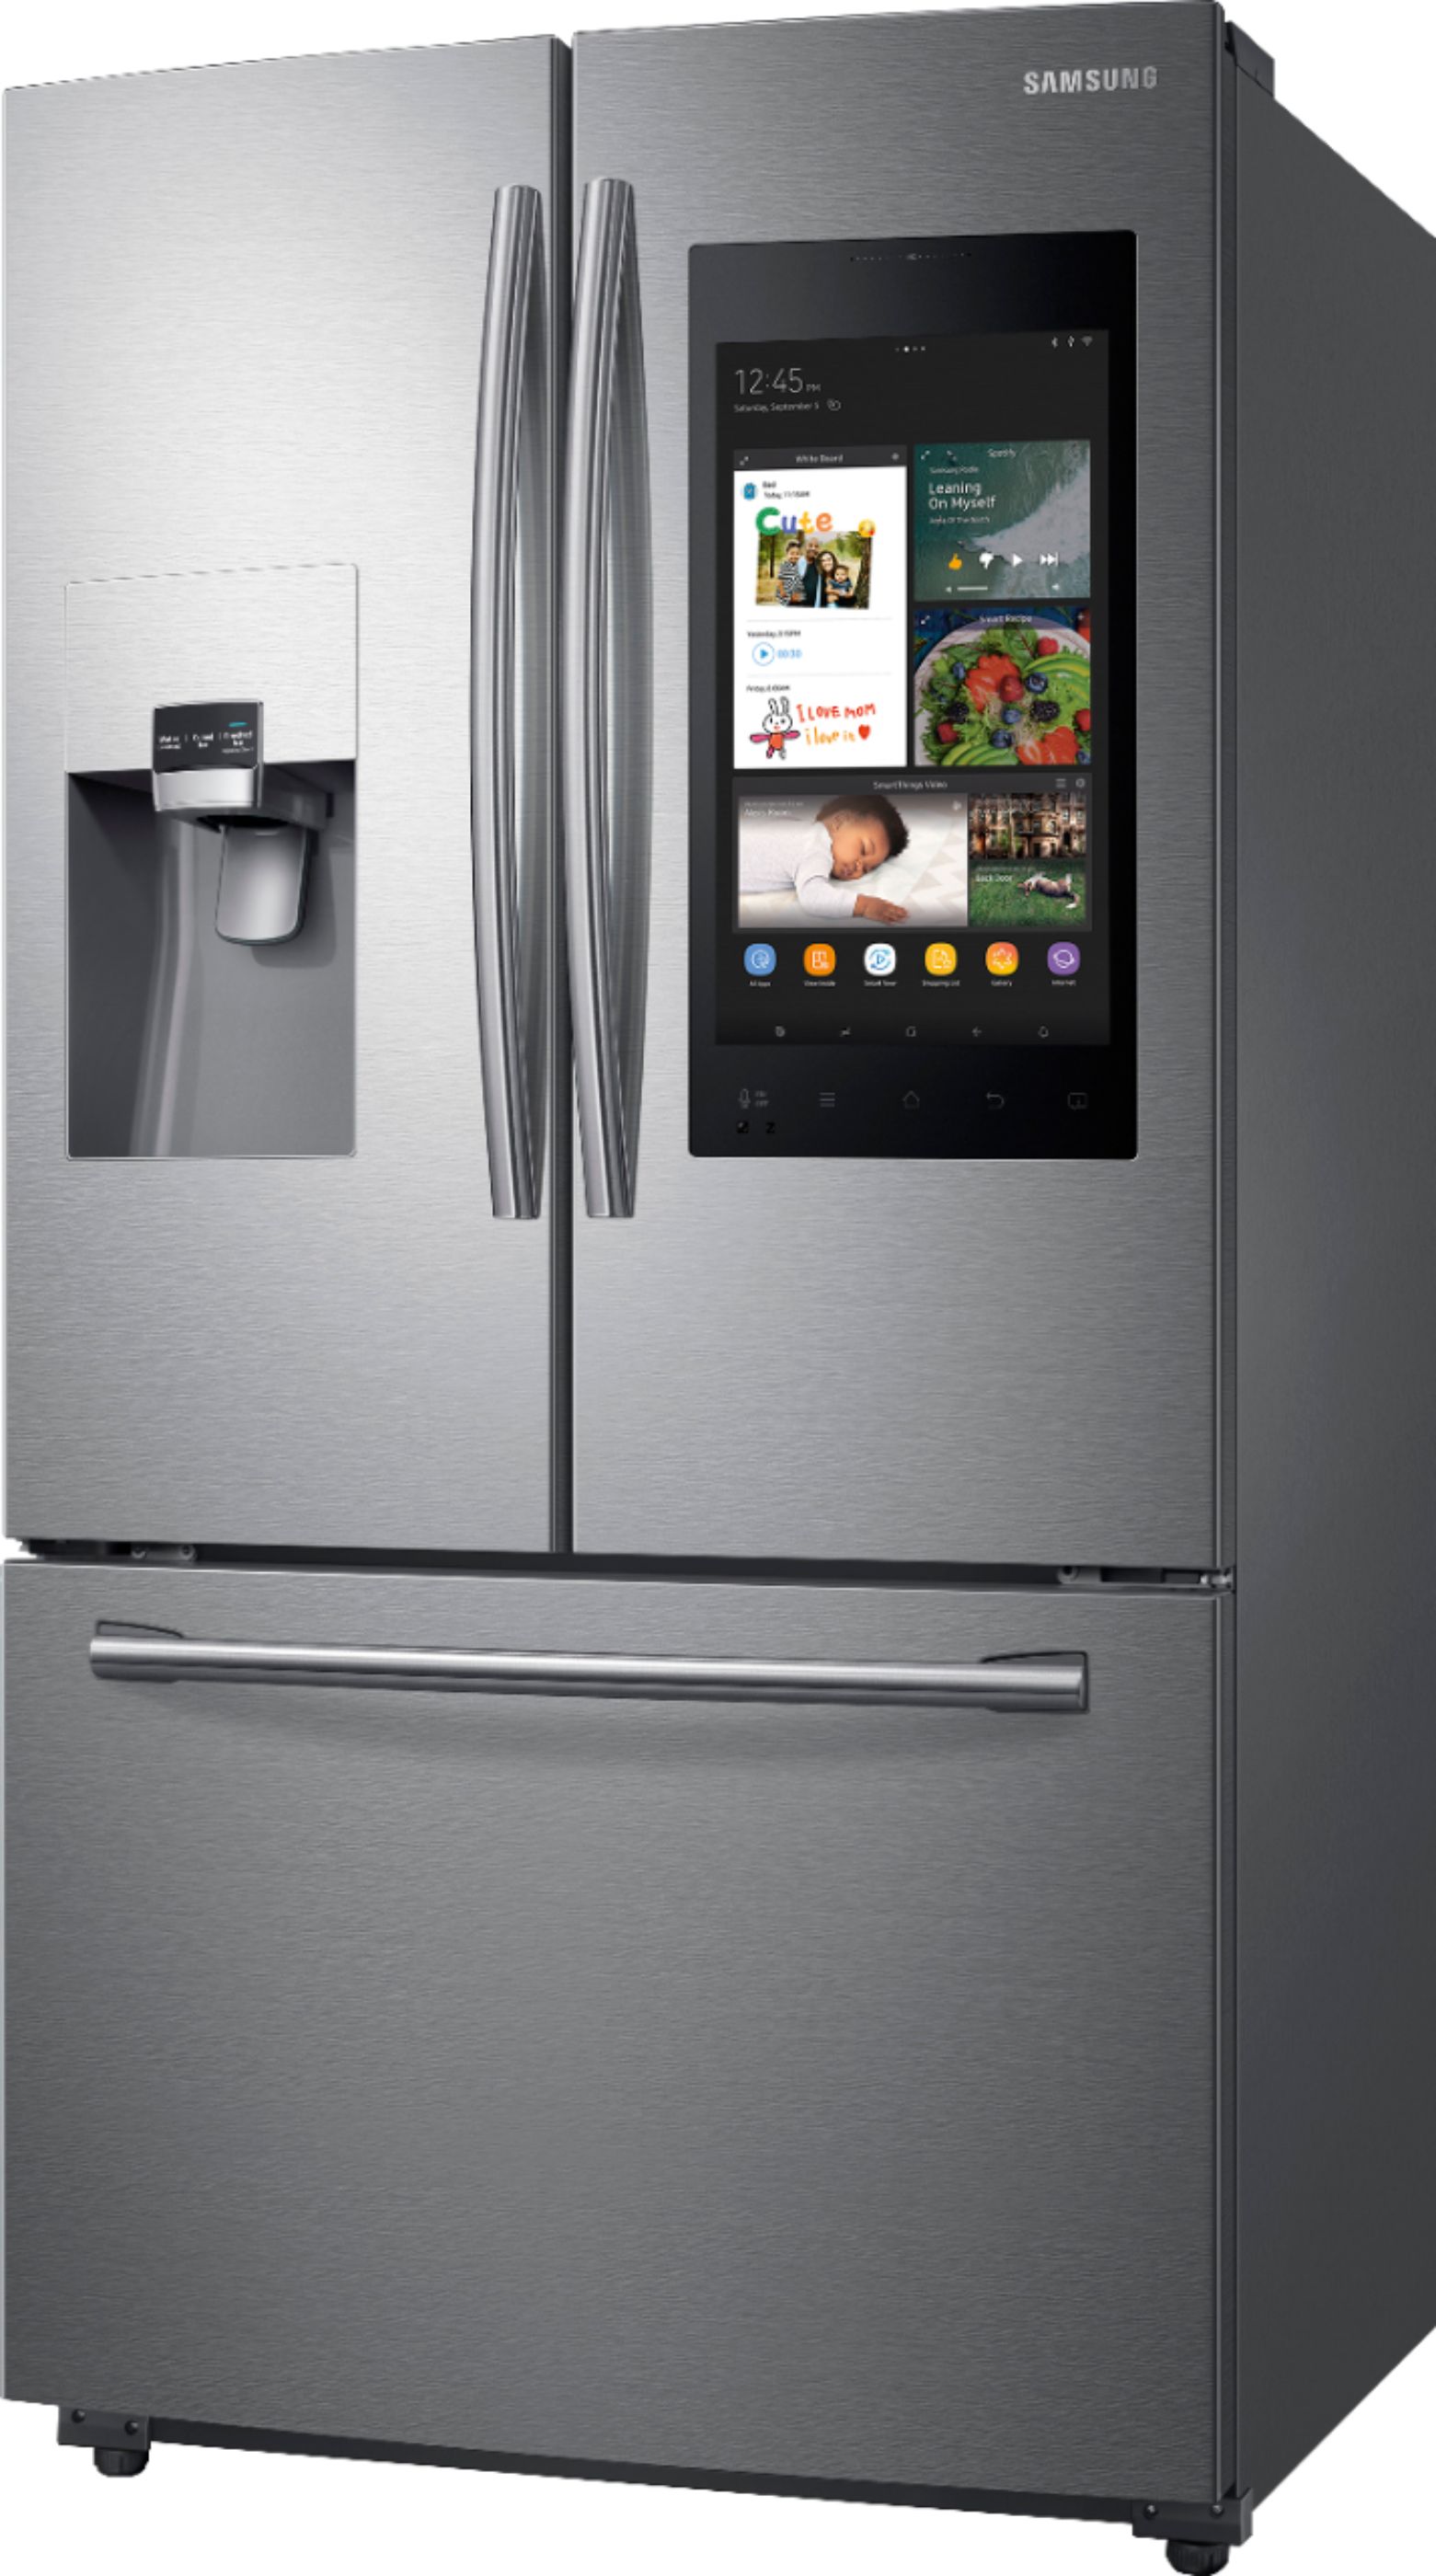 Left View: Samsung - Family Hub 24.2 Cu. Ft. 3-Door French Door Refrigerator - Stainless steel